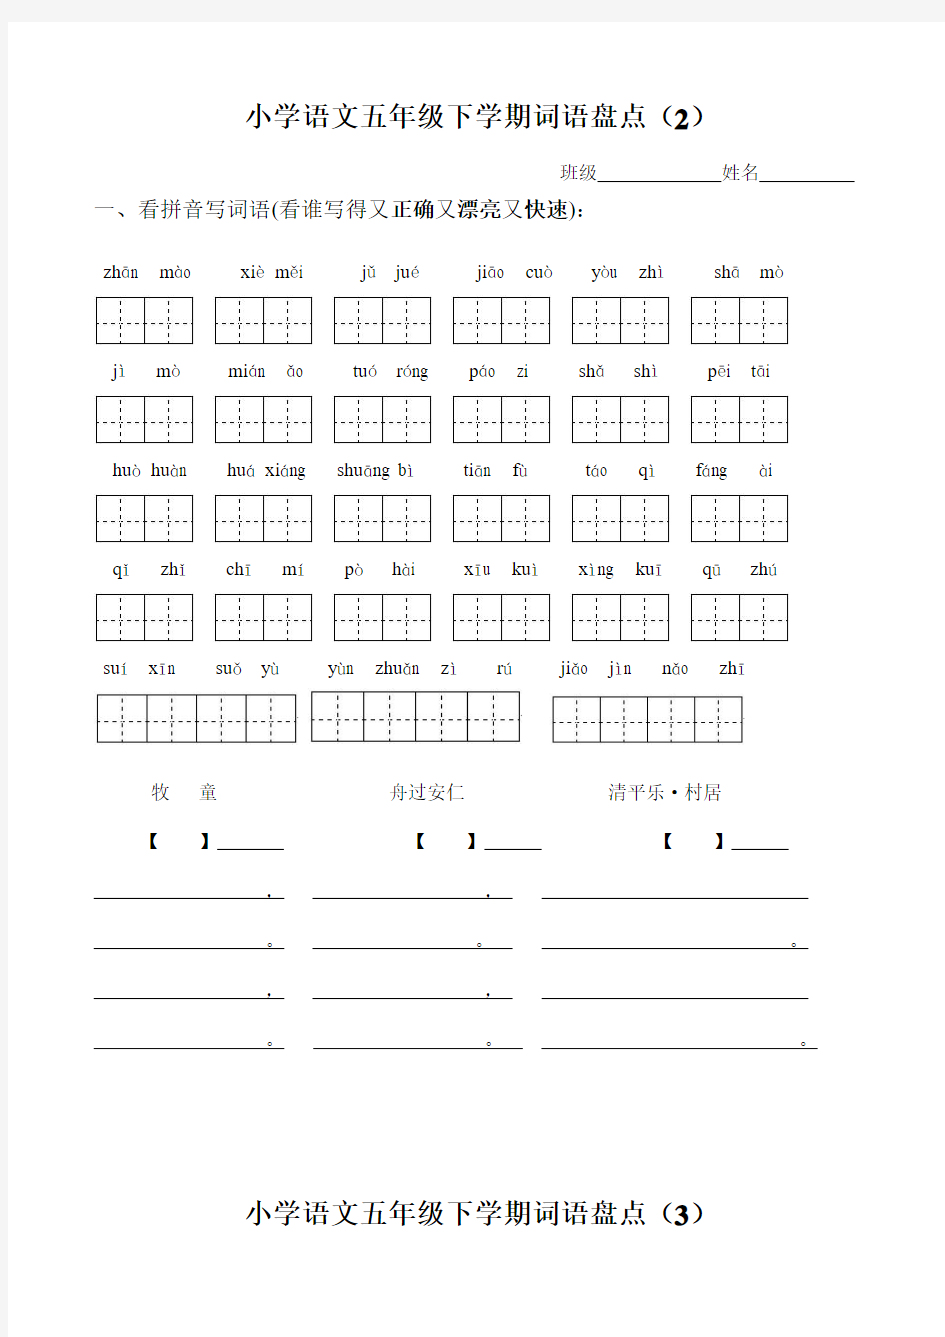 人教版小学语文五年级下册所有词语看拼音写汉字(同名8605)